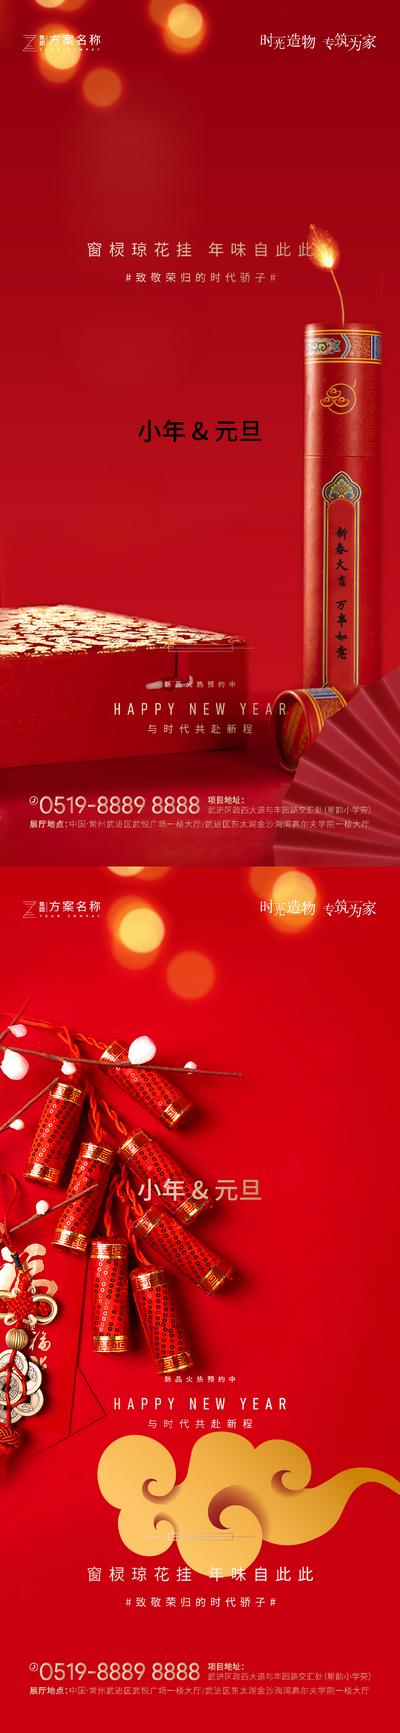 南门网 海报 房地产 公历节日 中国传统节日 小年 元旦 鞭炮